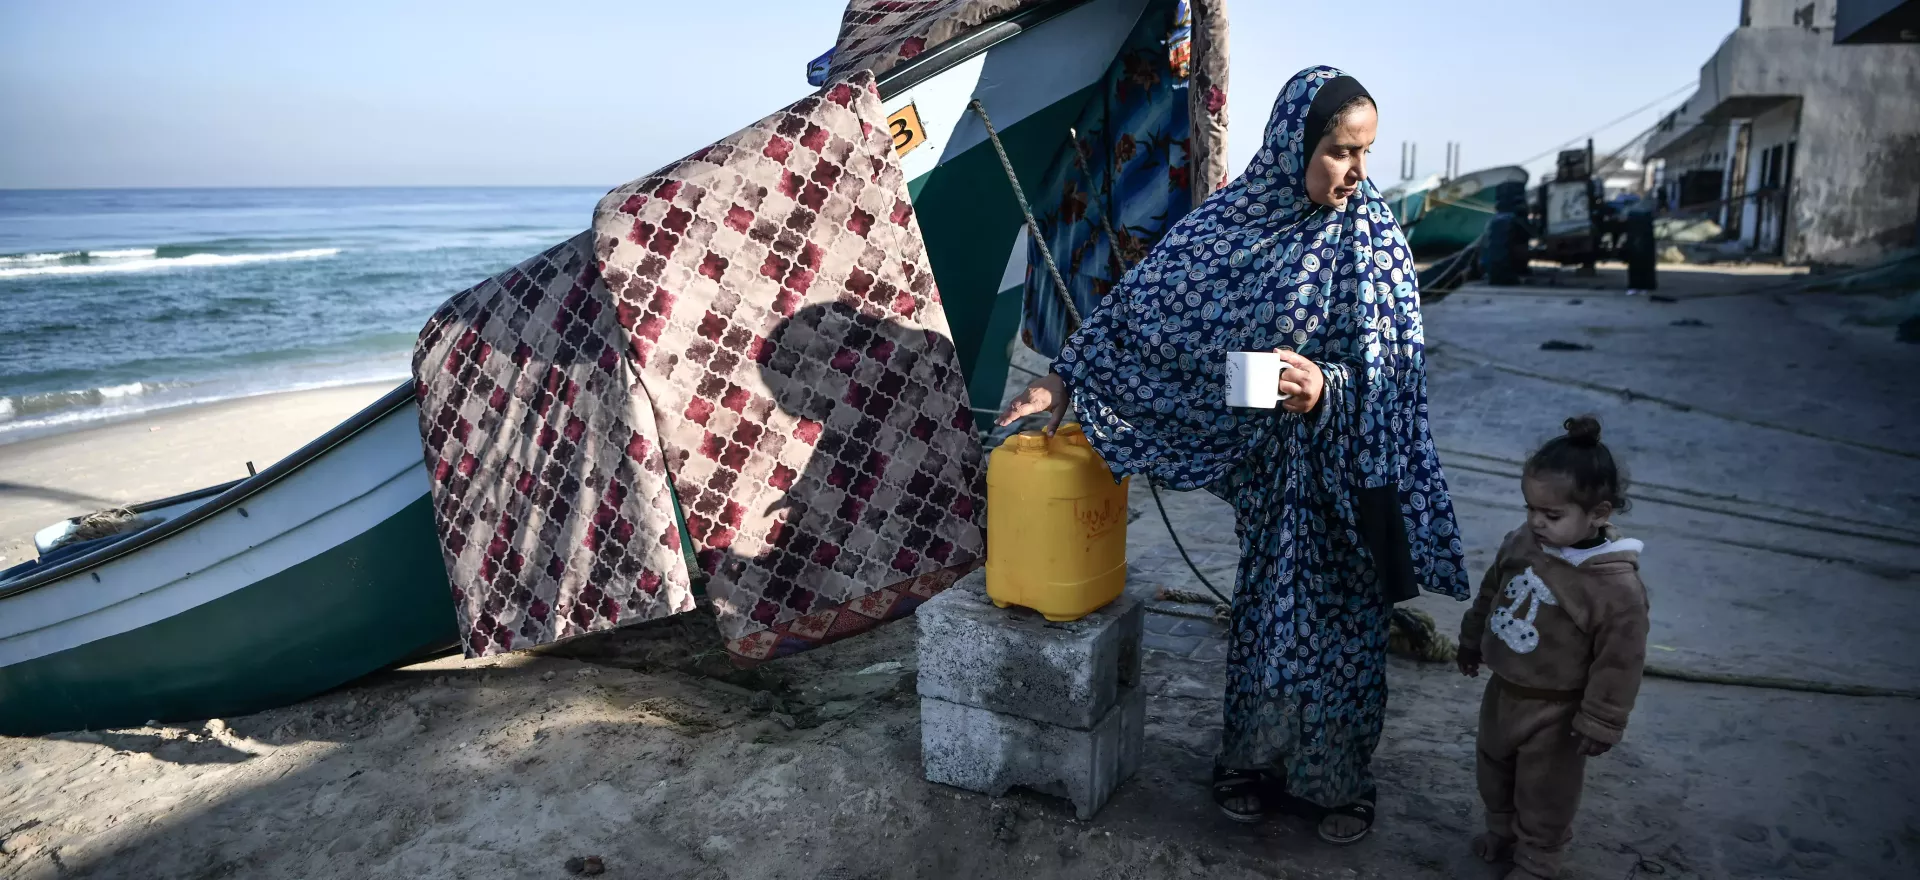 أم وطفلتها تأخذان قسطاً من الراحة وتشربان الماء بجانب قارب صيد على الشاطئ.